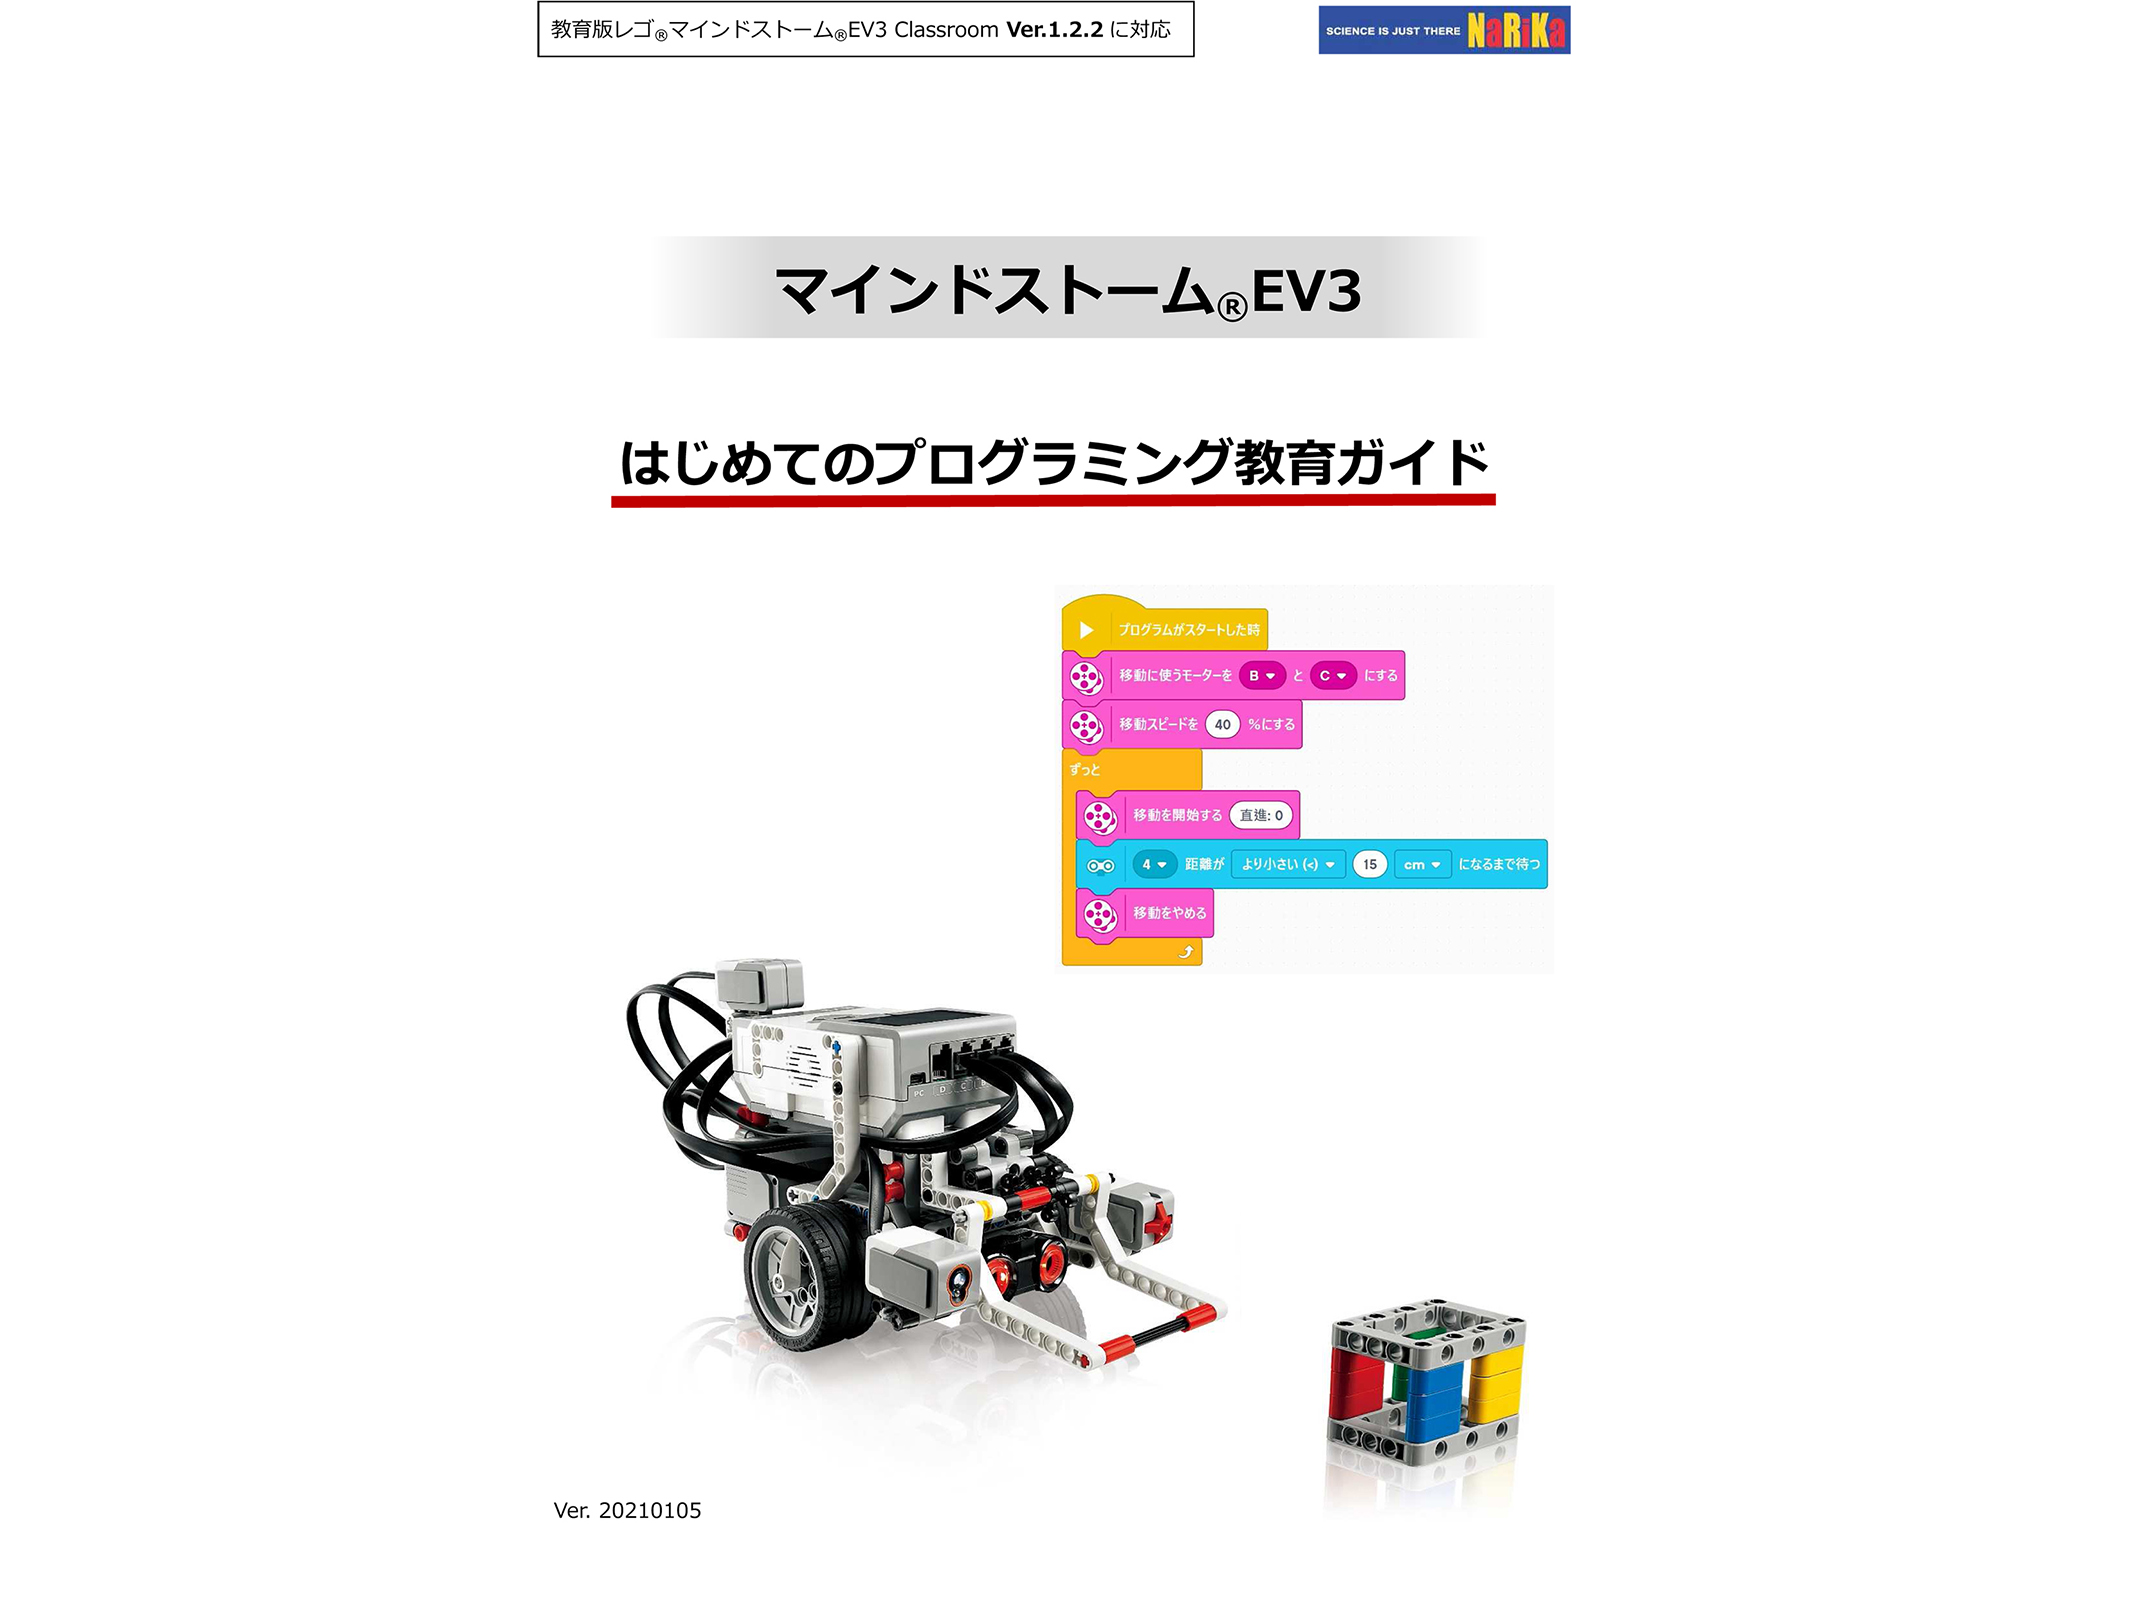 レゴ マインドストームEV3 基本+拡張セット+充電器+マニュアル www